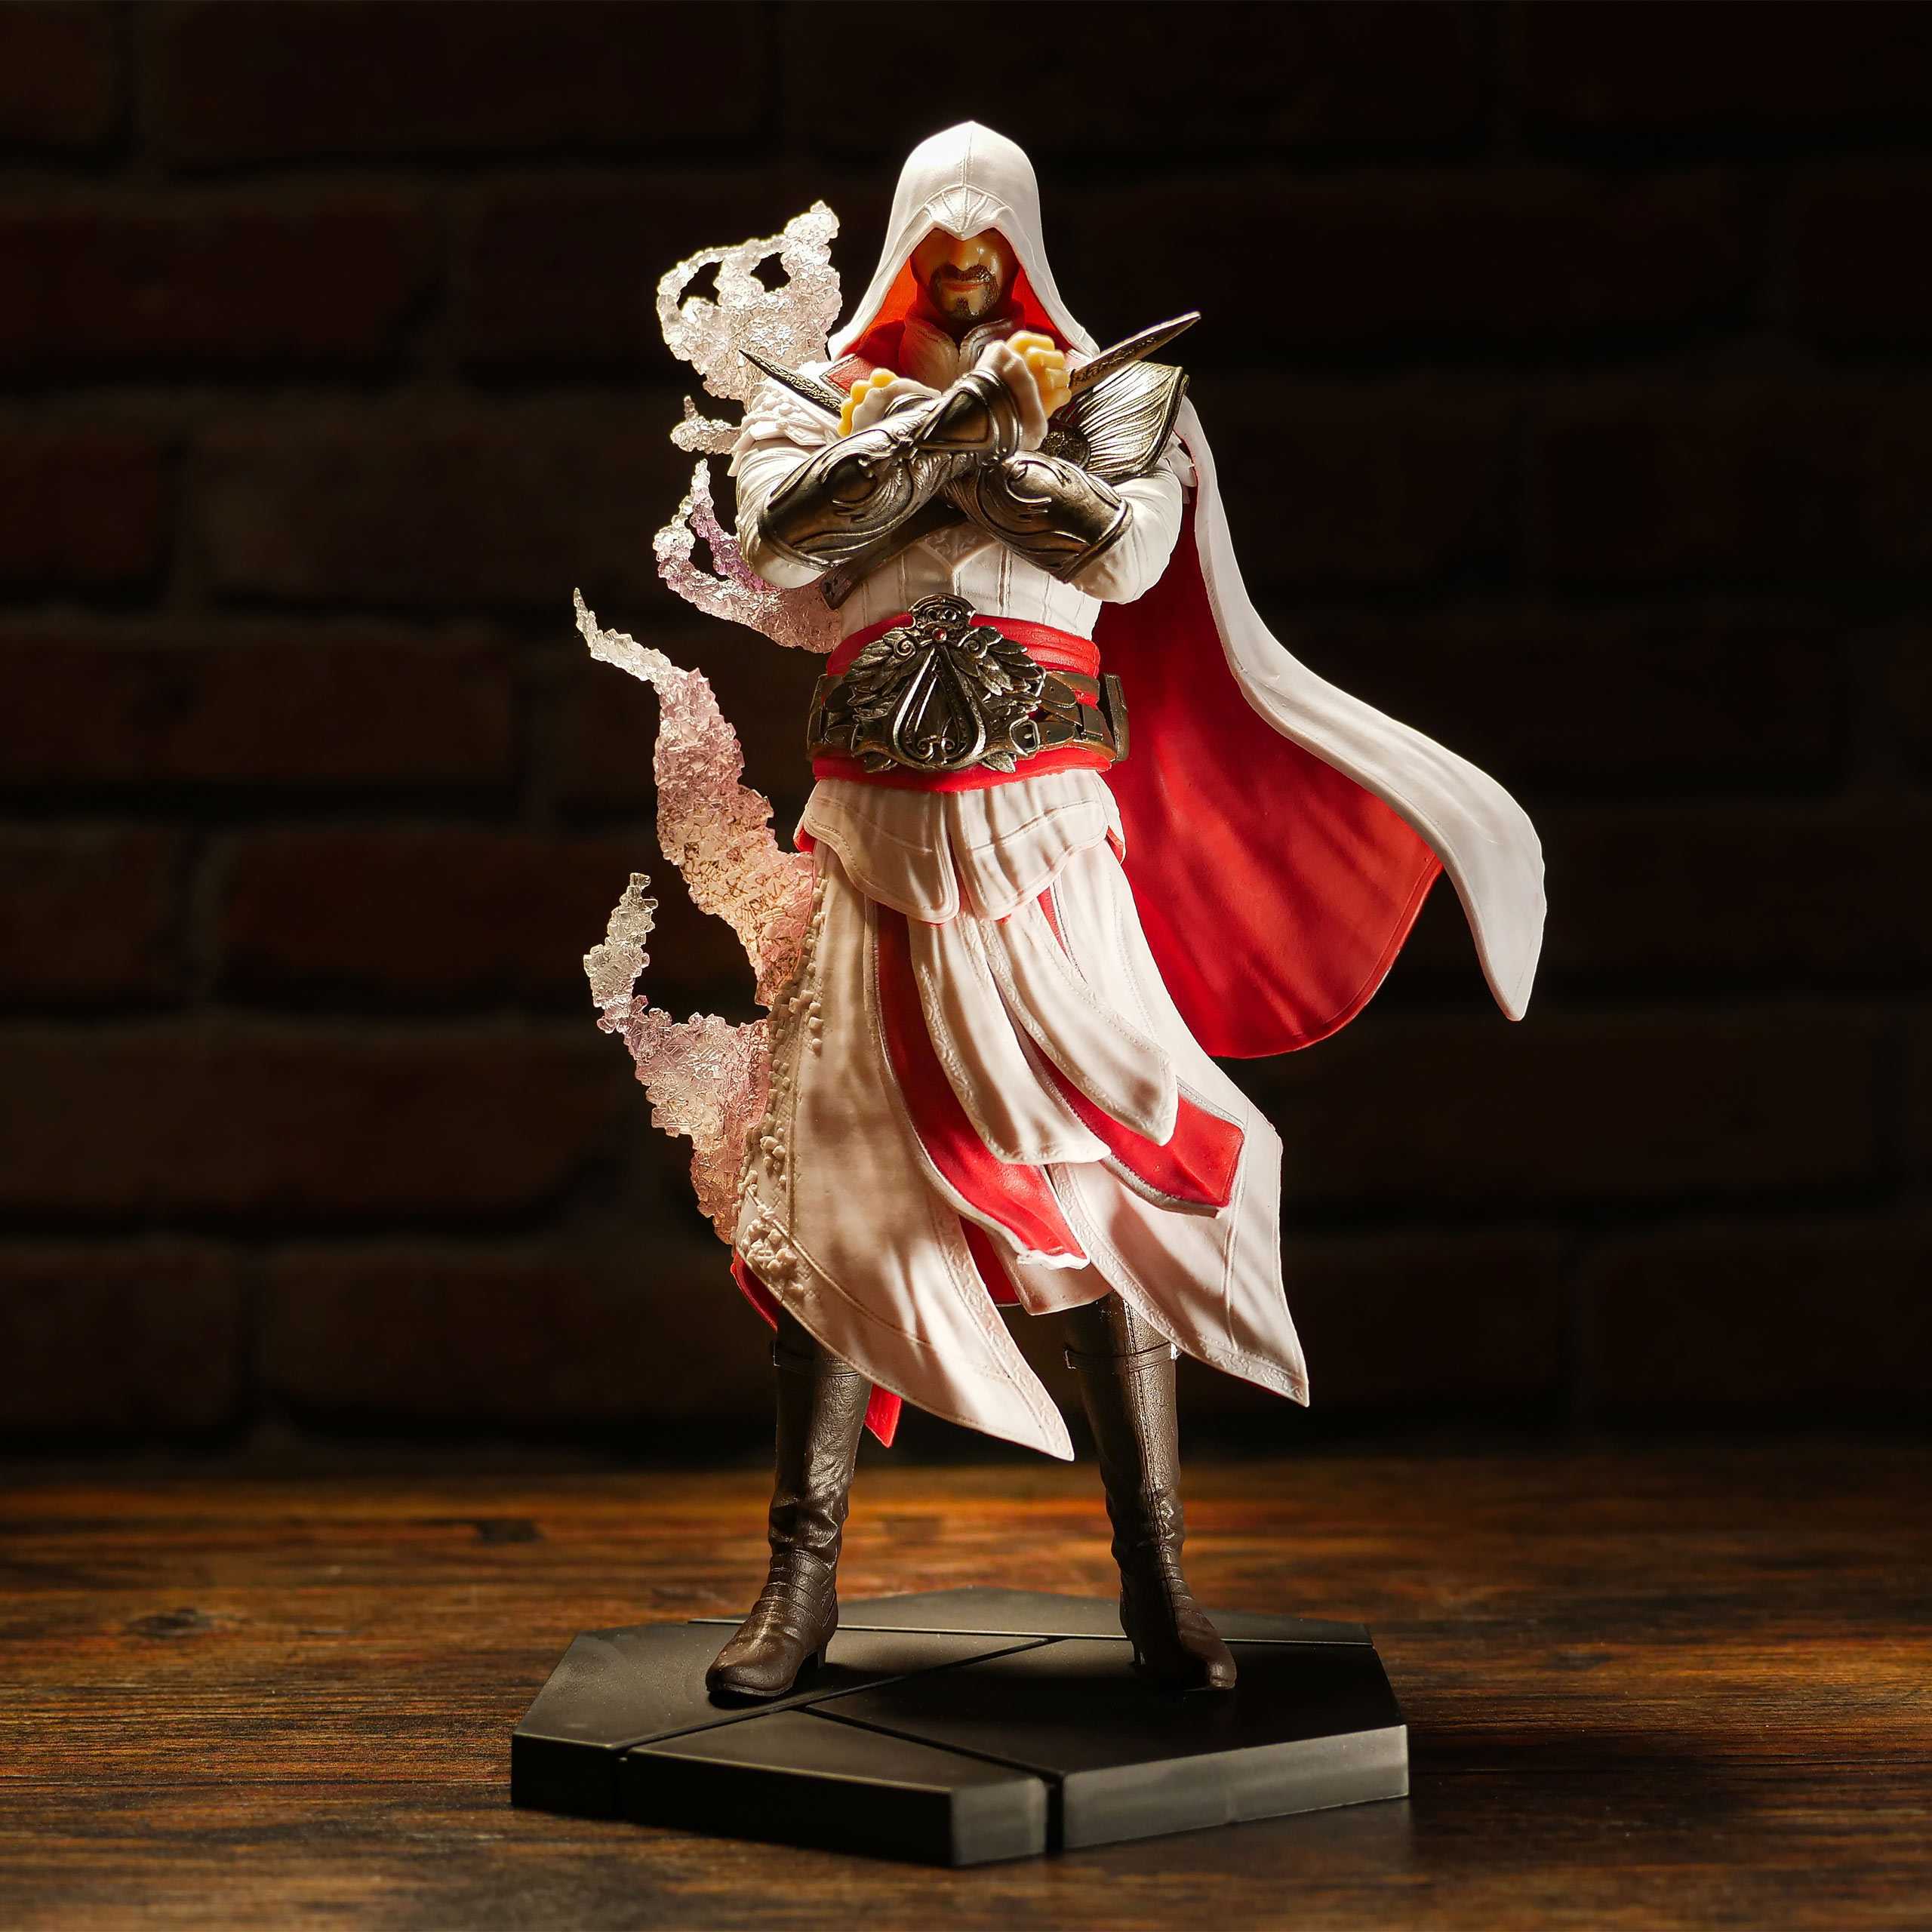 Assassin's Creed - Master Assassin Ezio Figure 25 cm